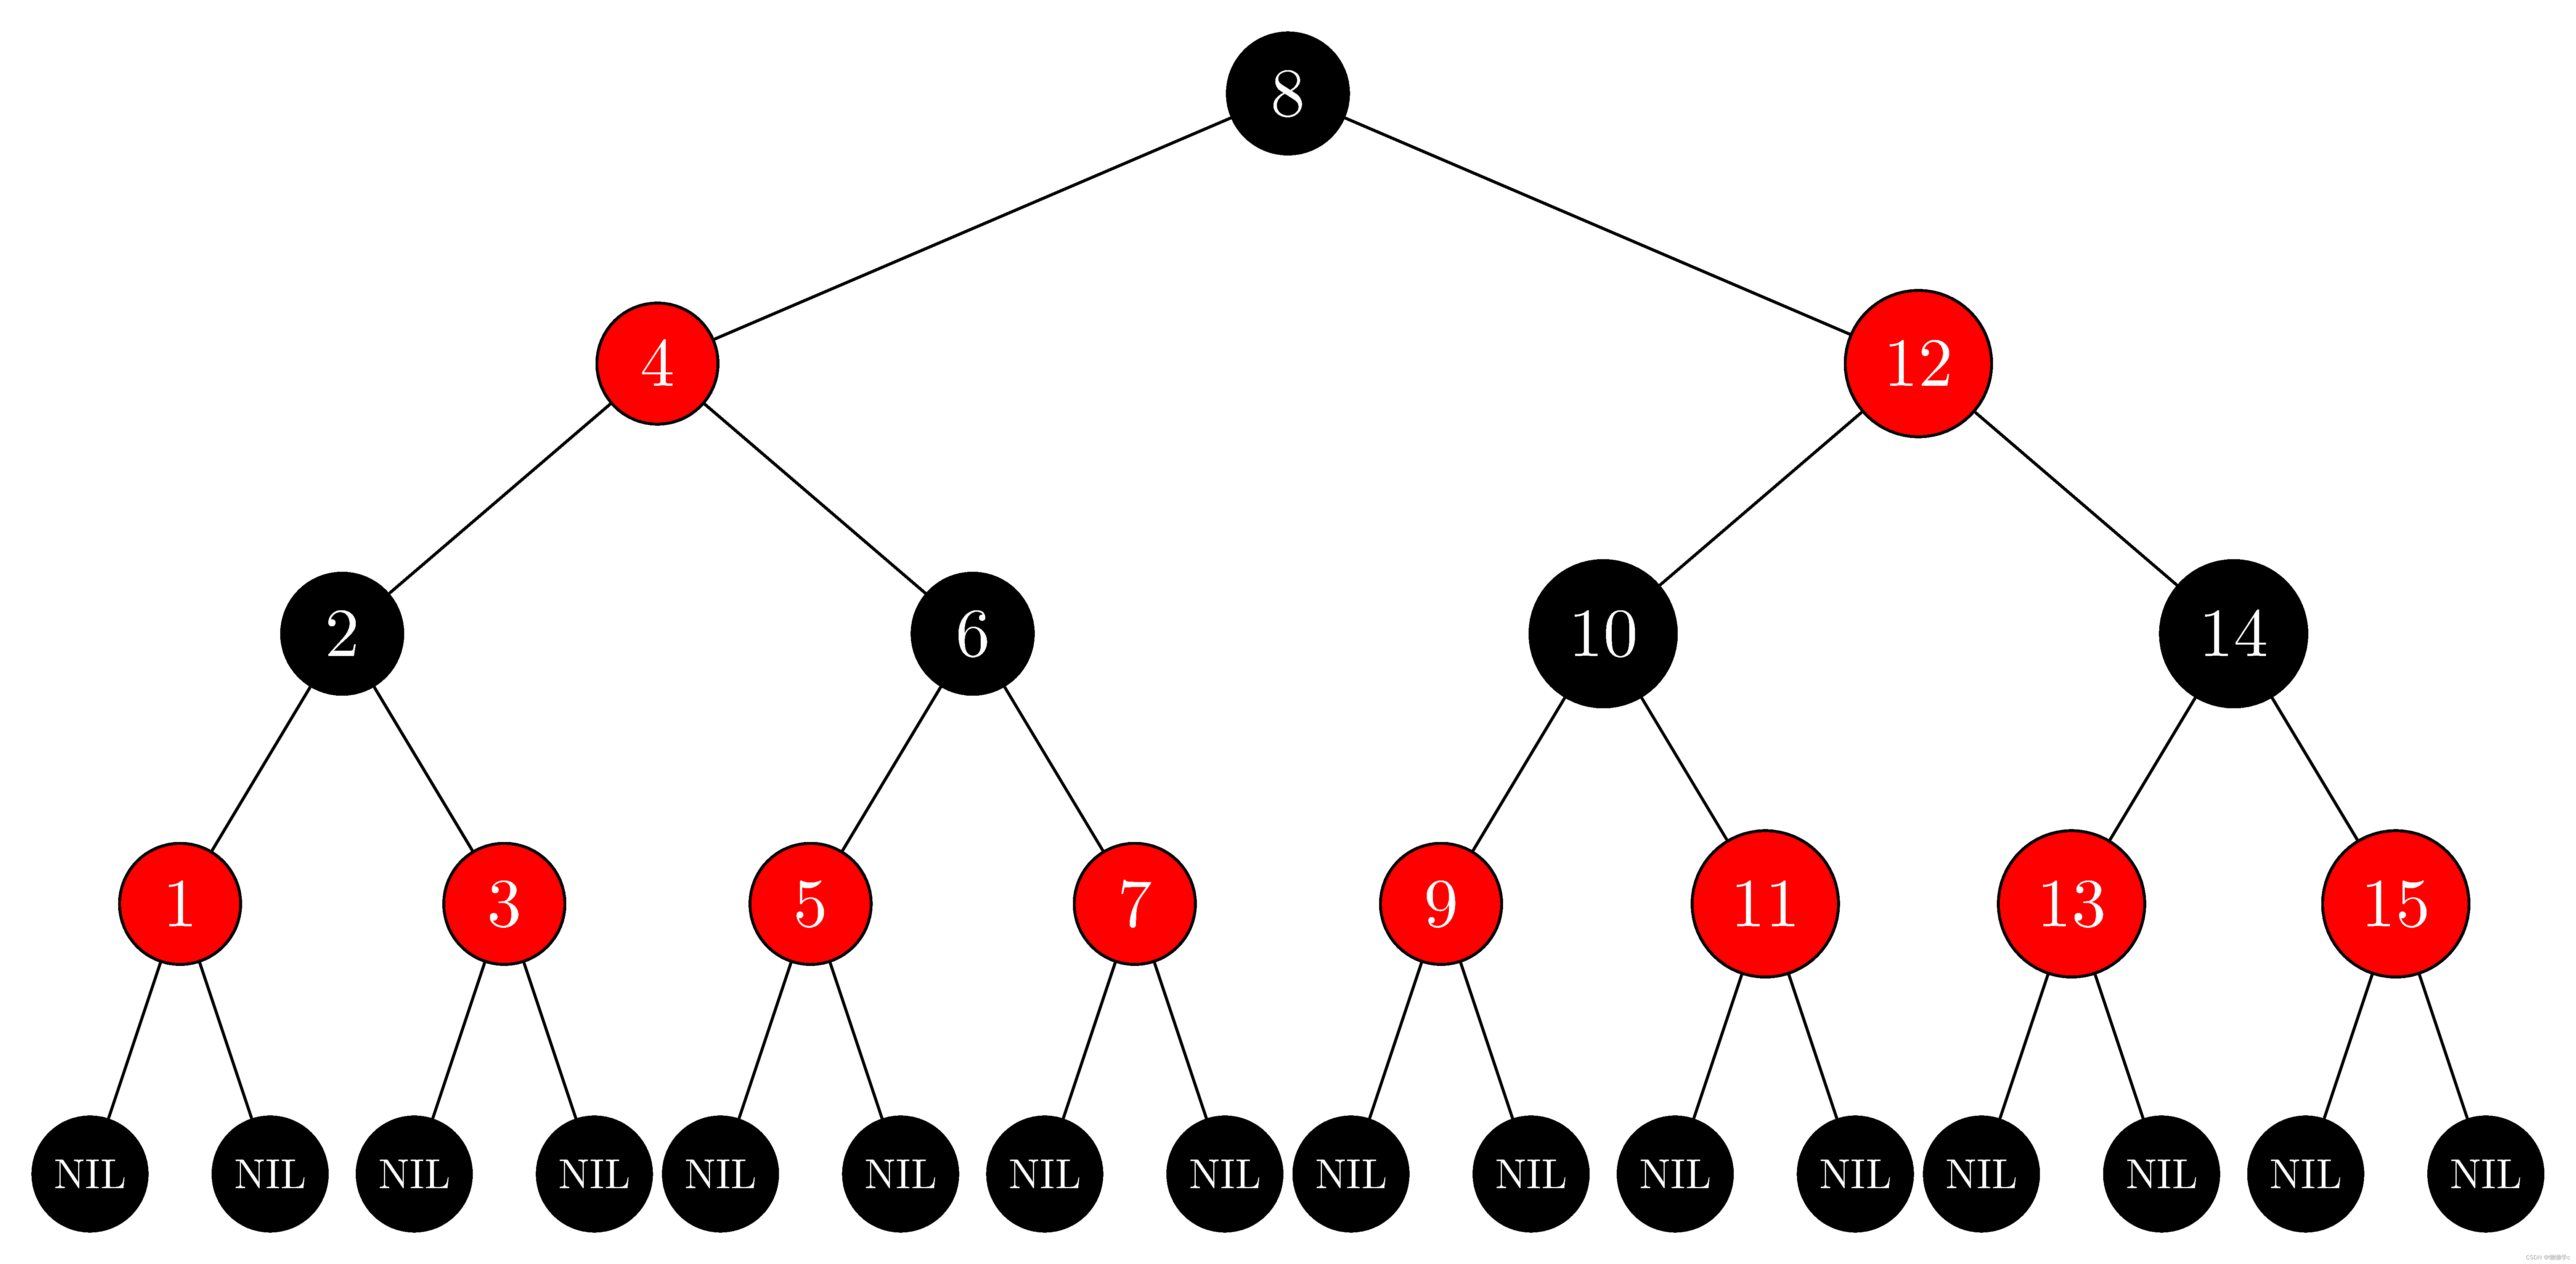 c++的学习之路：27、红黑树